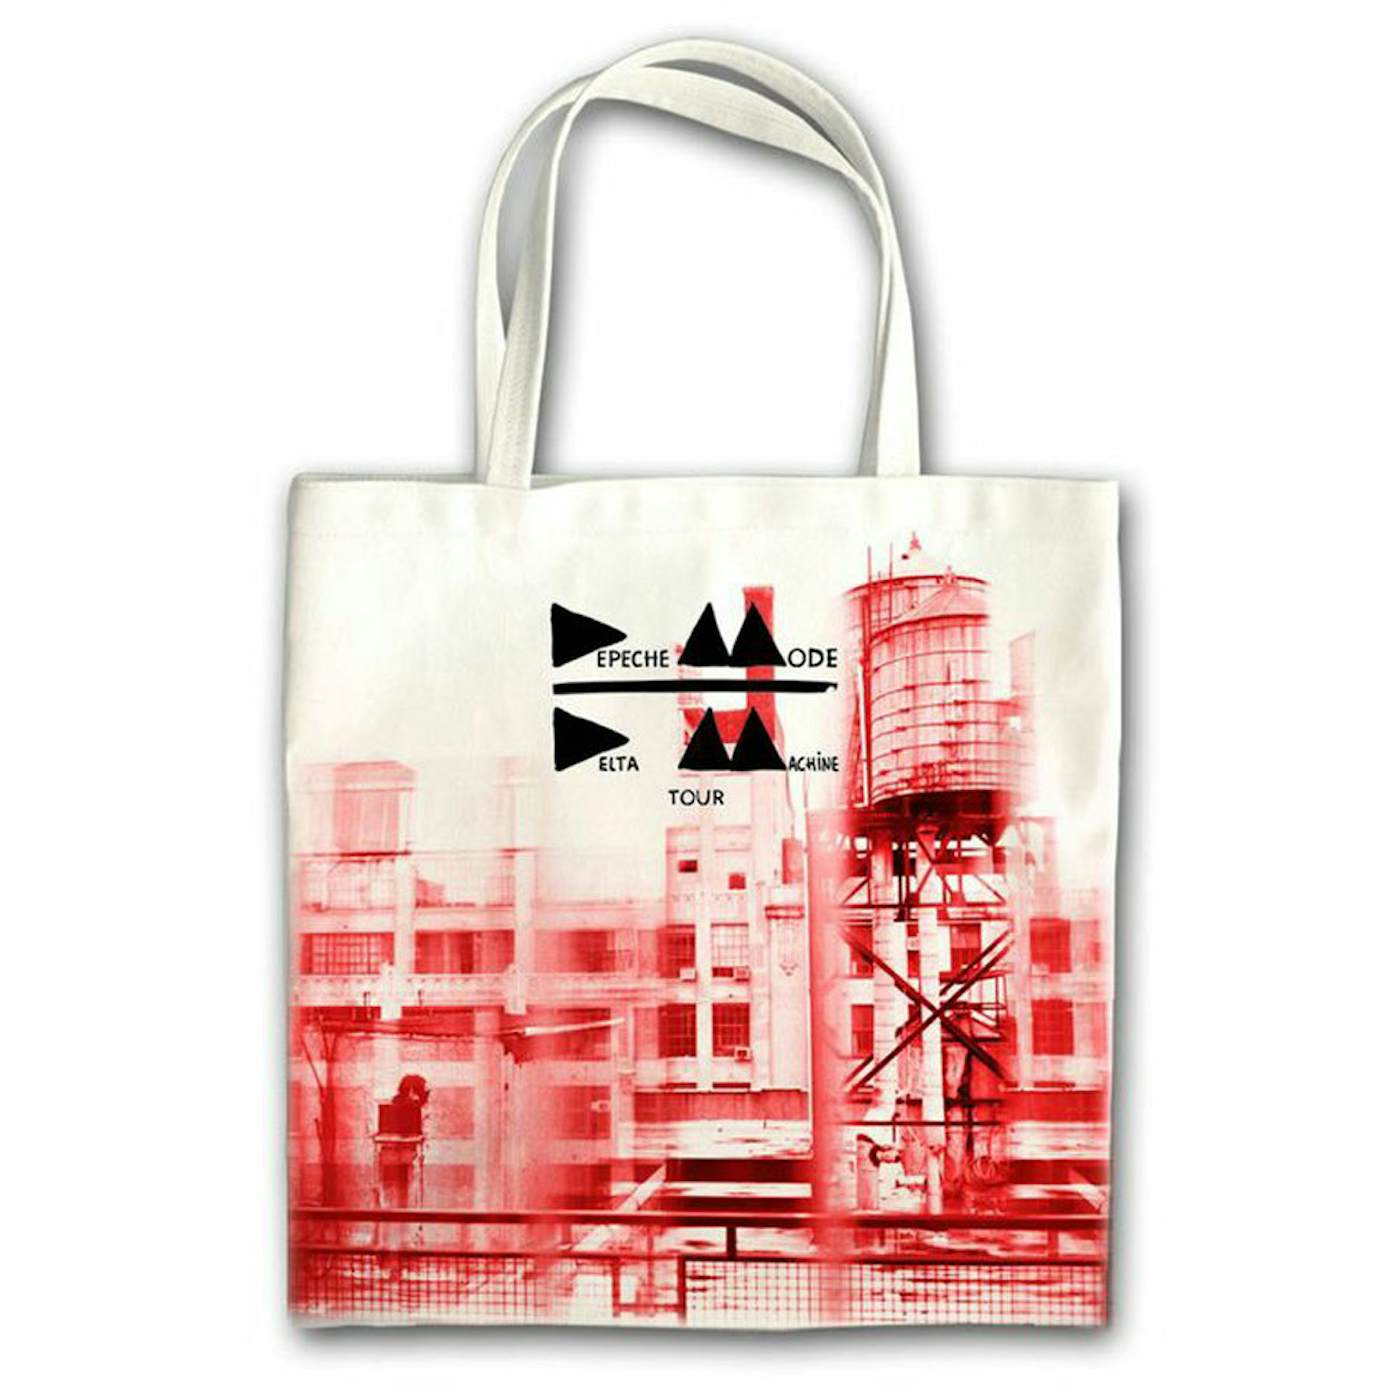 Depeche Mode Album Cover Tote Bag